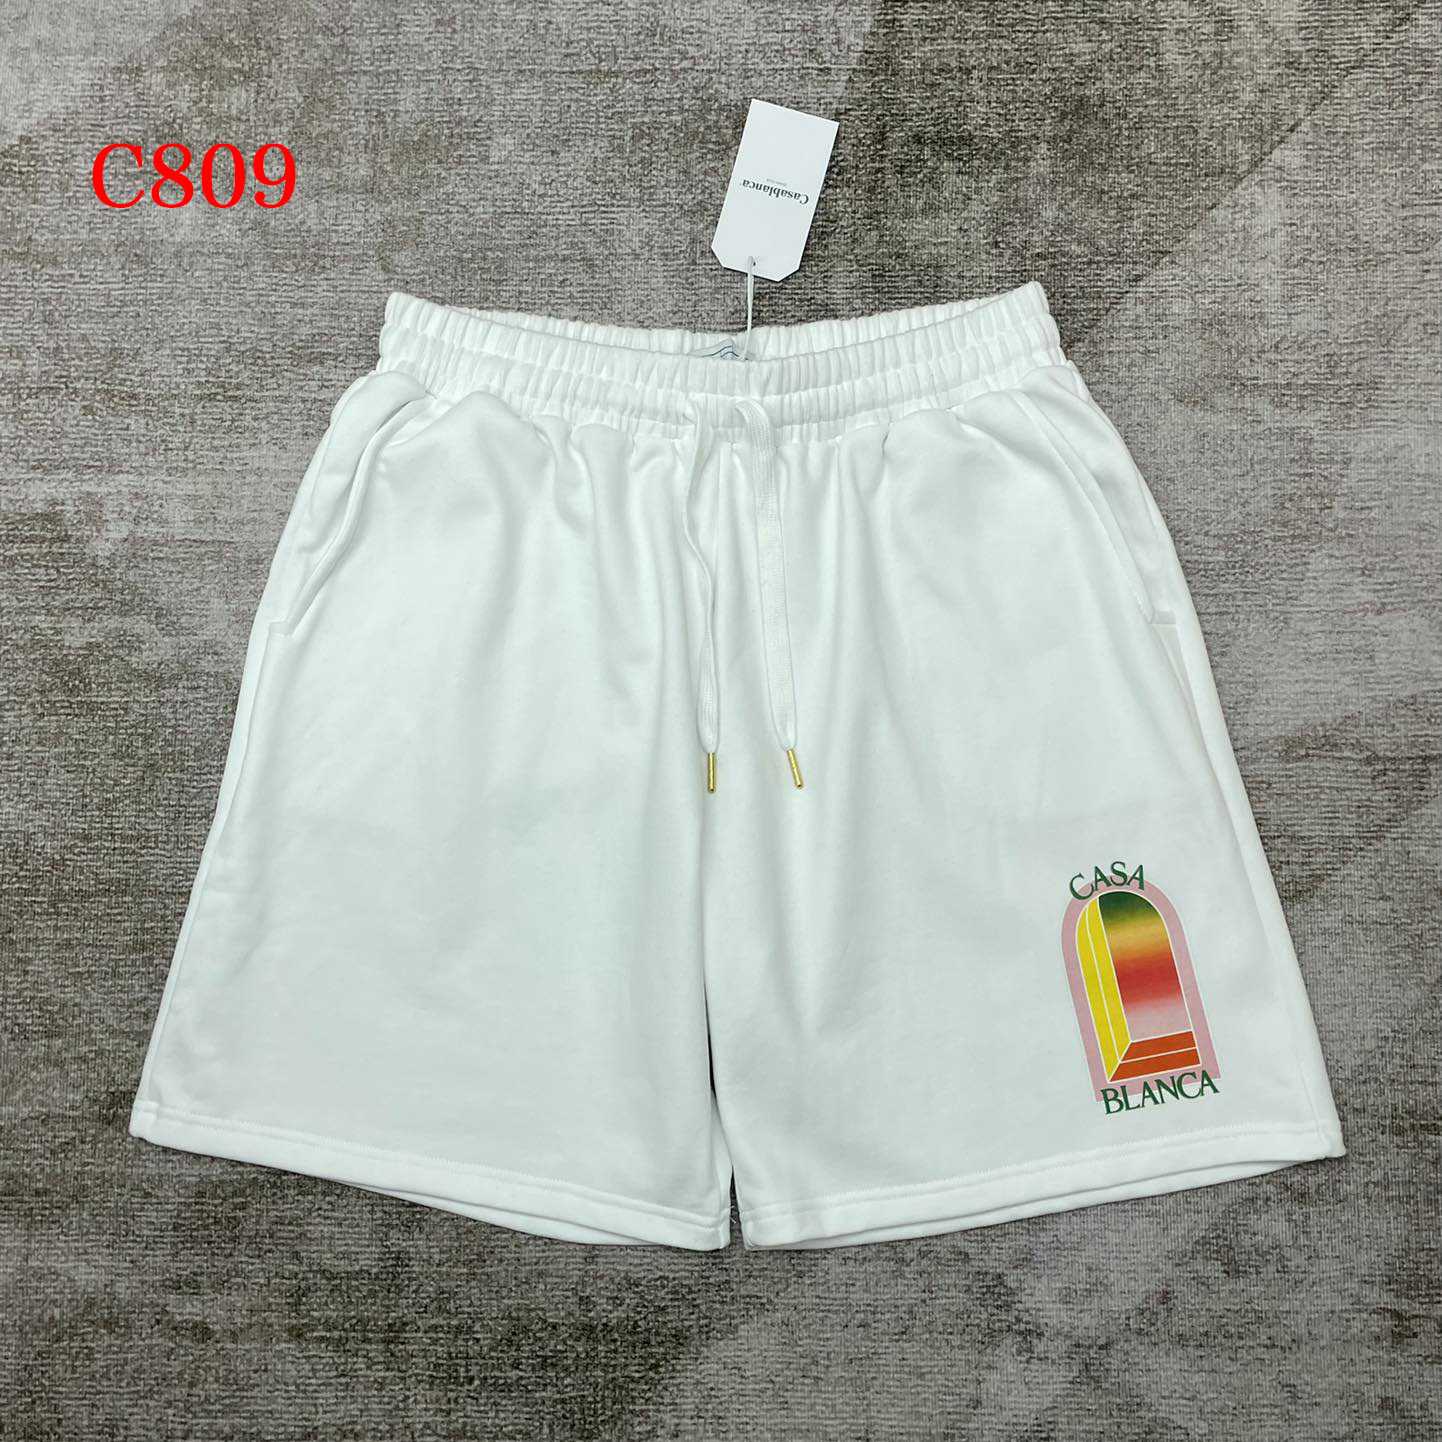 Casablanca Sweat Shorts   c809 - DesignerGu